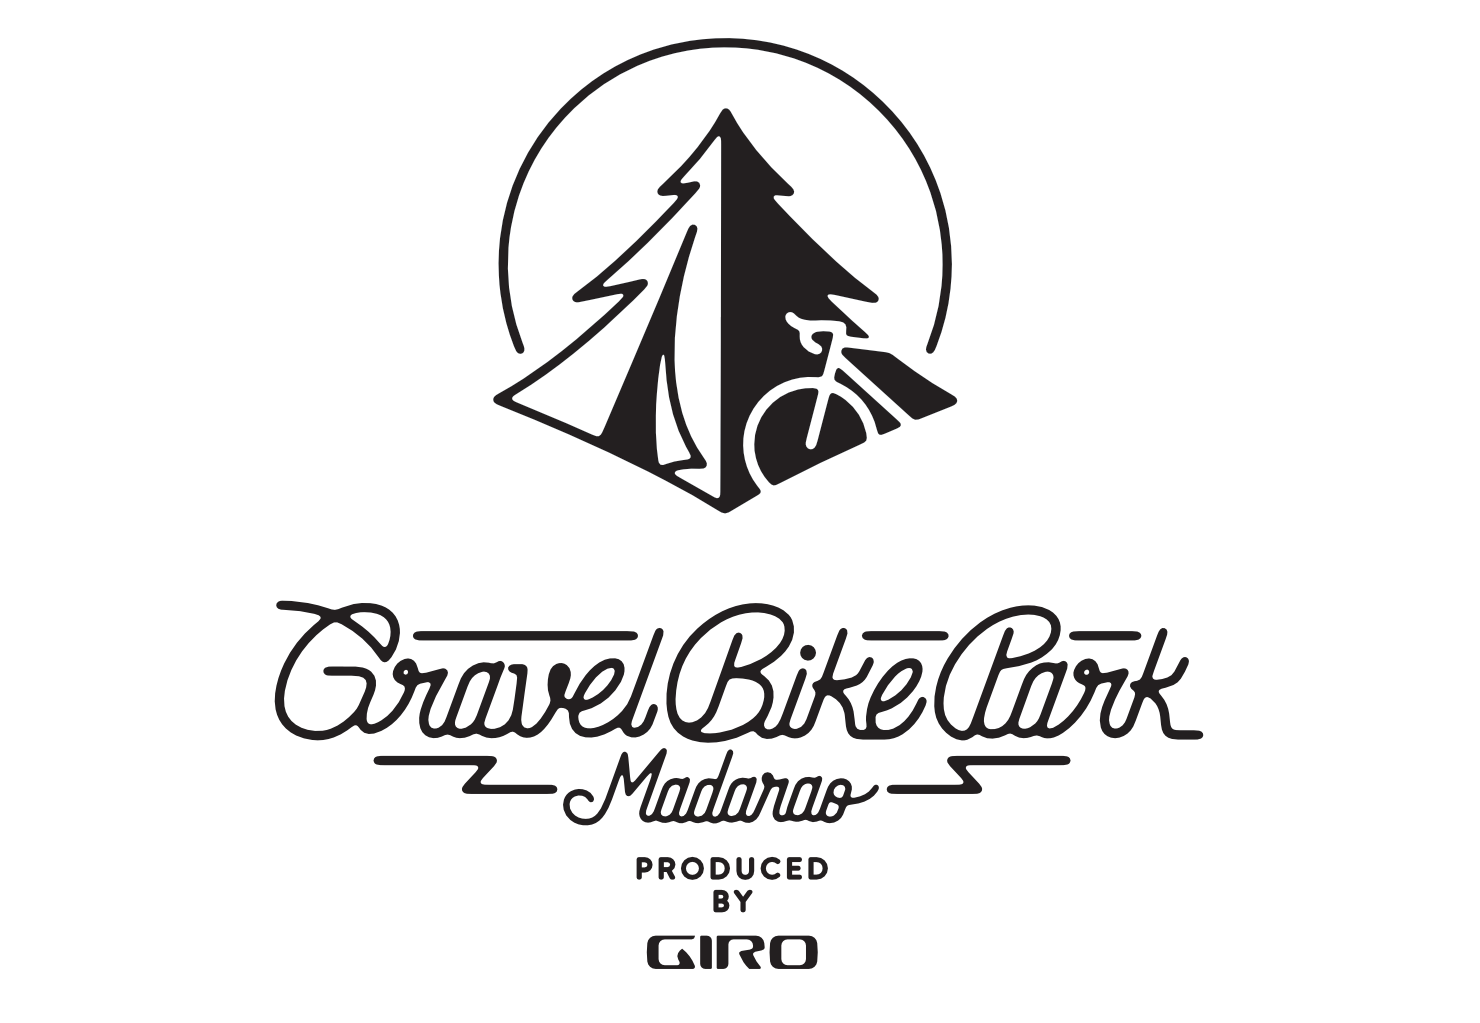 GIRO Gravel Bike Park Madarao ジロ グラベル バイクパーク斑尾